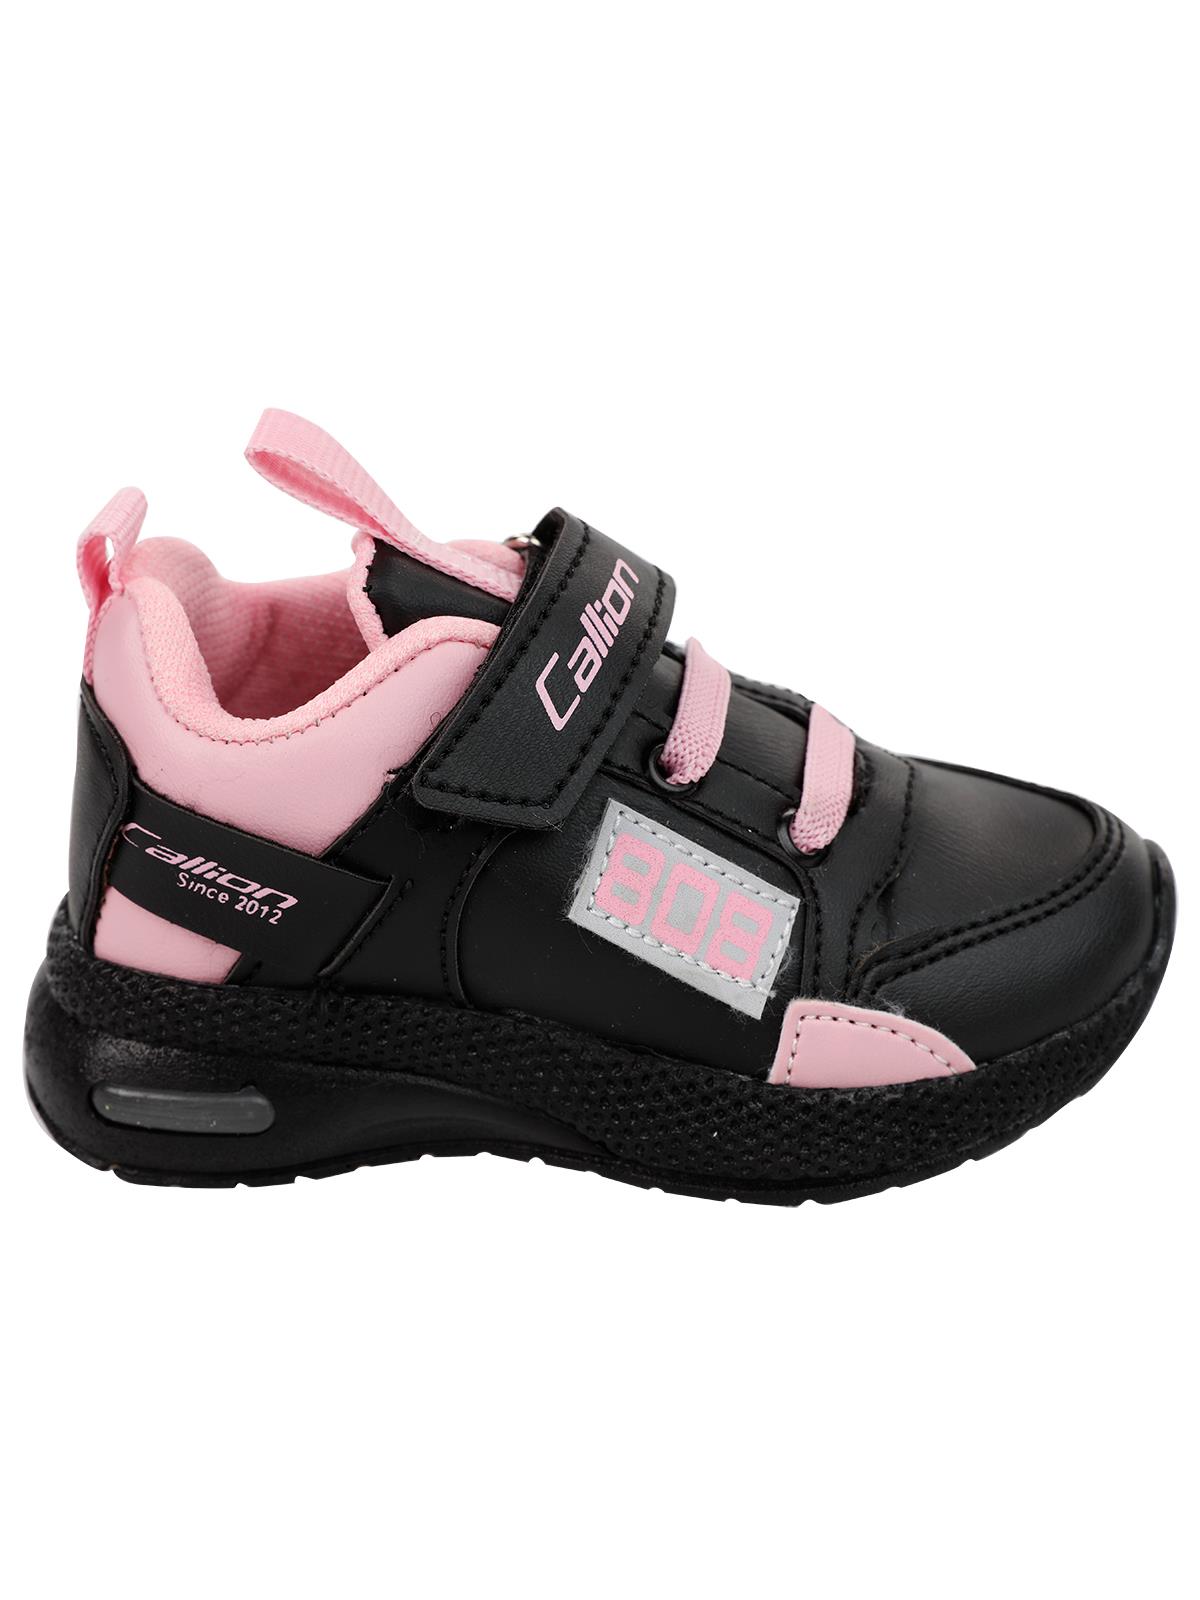 Callion Kız Çocuk Spor Ayakkabı 22-25 Numara Siyah-Pembe